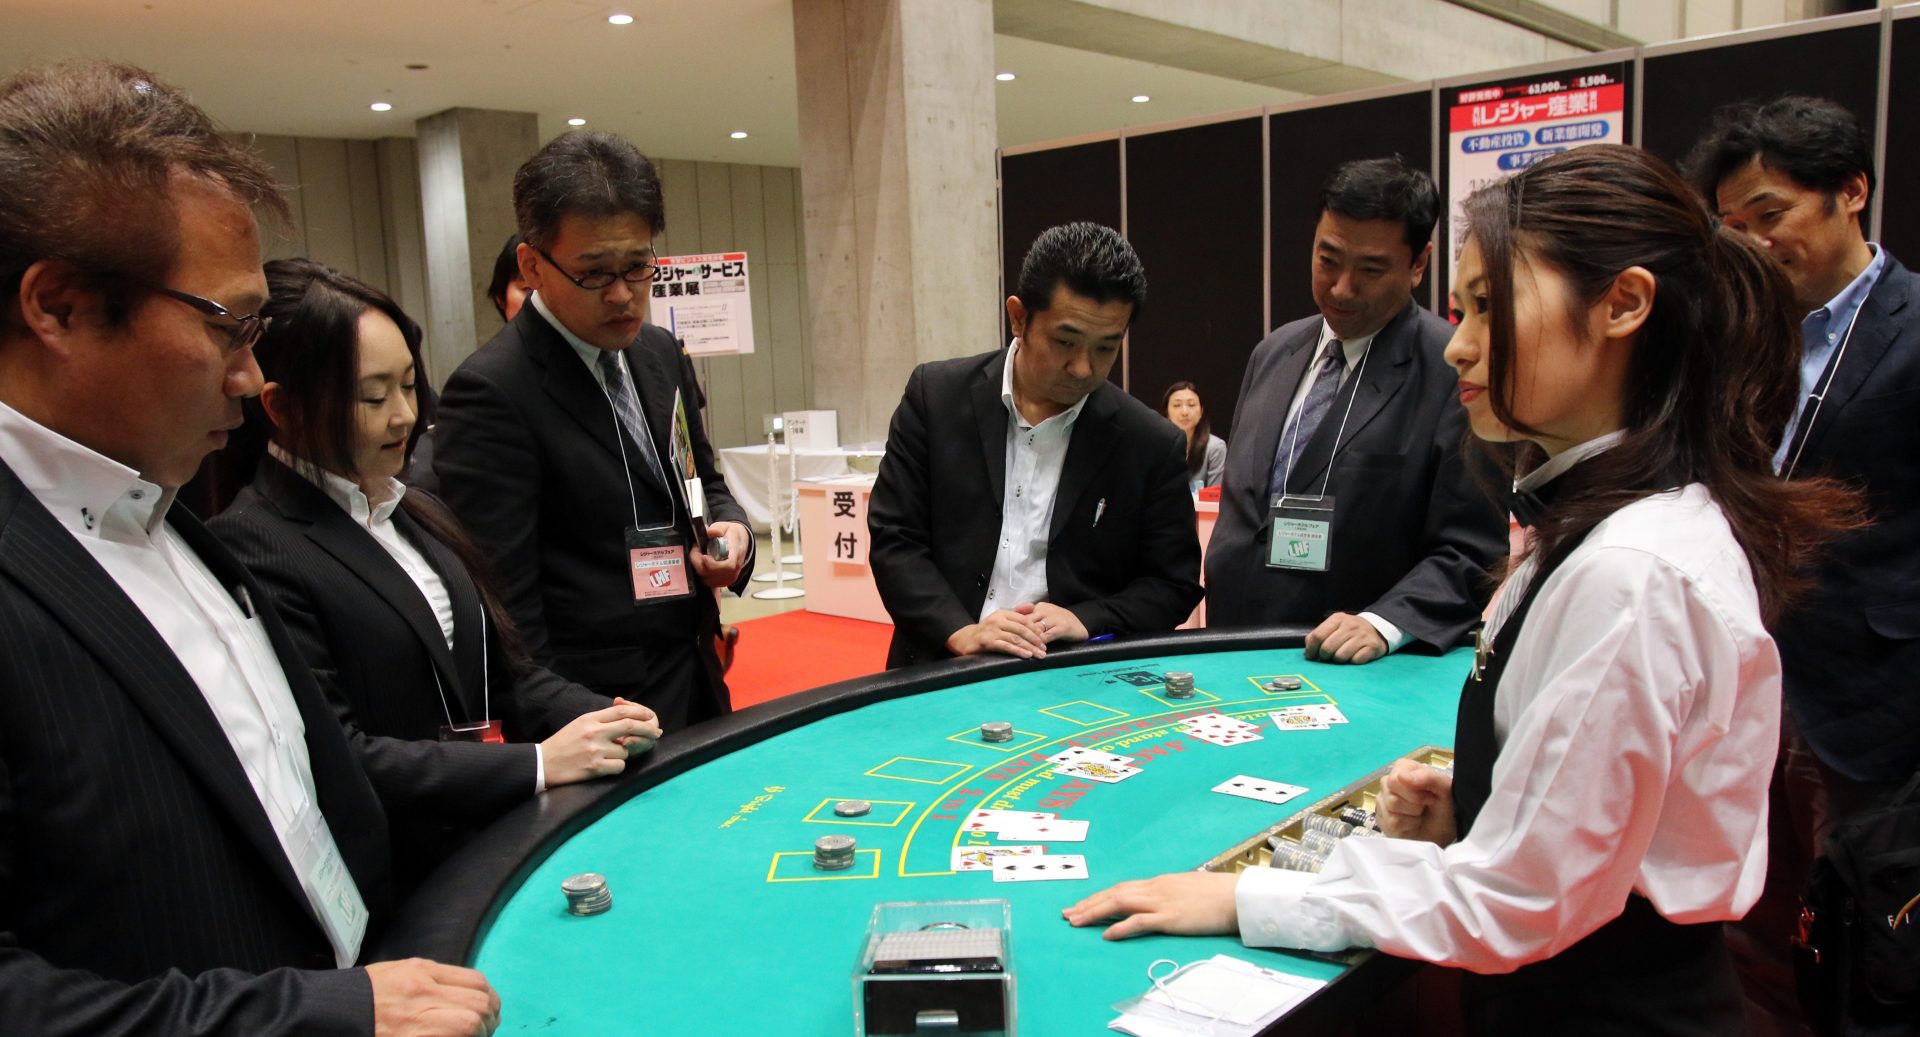 Démonstration de blackjack lors d'un salon des loisirs à Tokyo le 27 novembre 2014. (Crédits : AFP PHOTO / Yoshikazu TSUNO)